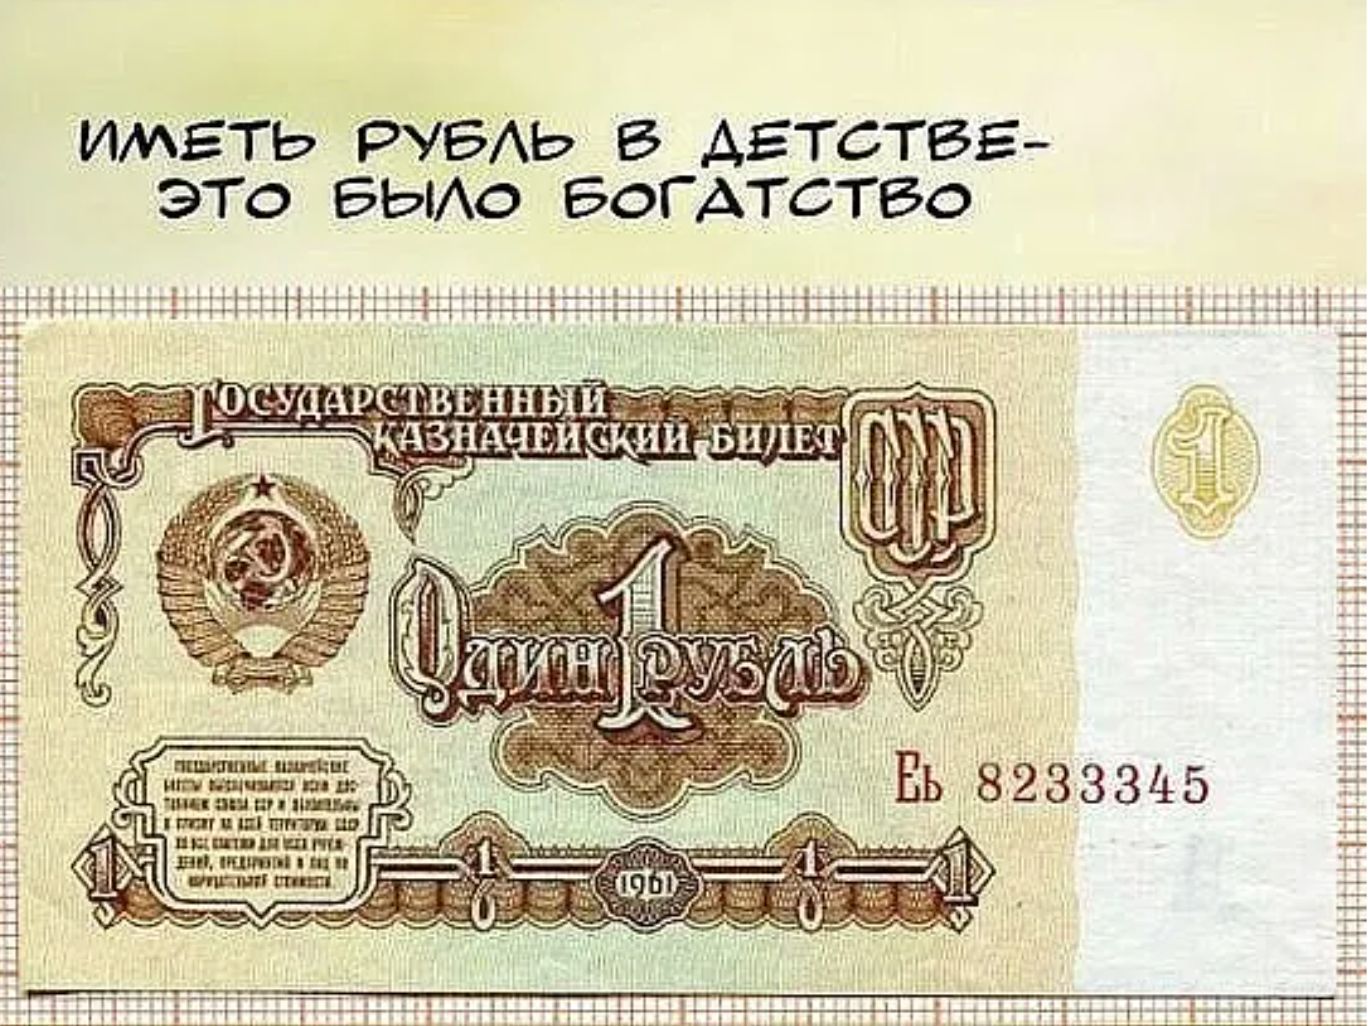 1 рубль в 80 е. СССР деньги один рубль. Изображение советского рубля. 1 Рубль СССР банкнота. Банкнота 1 рубль 1961 года.